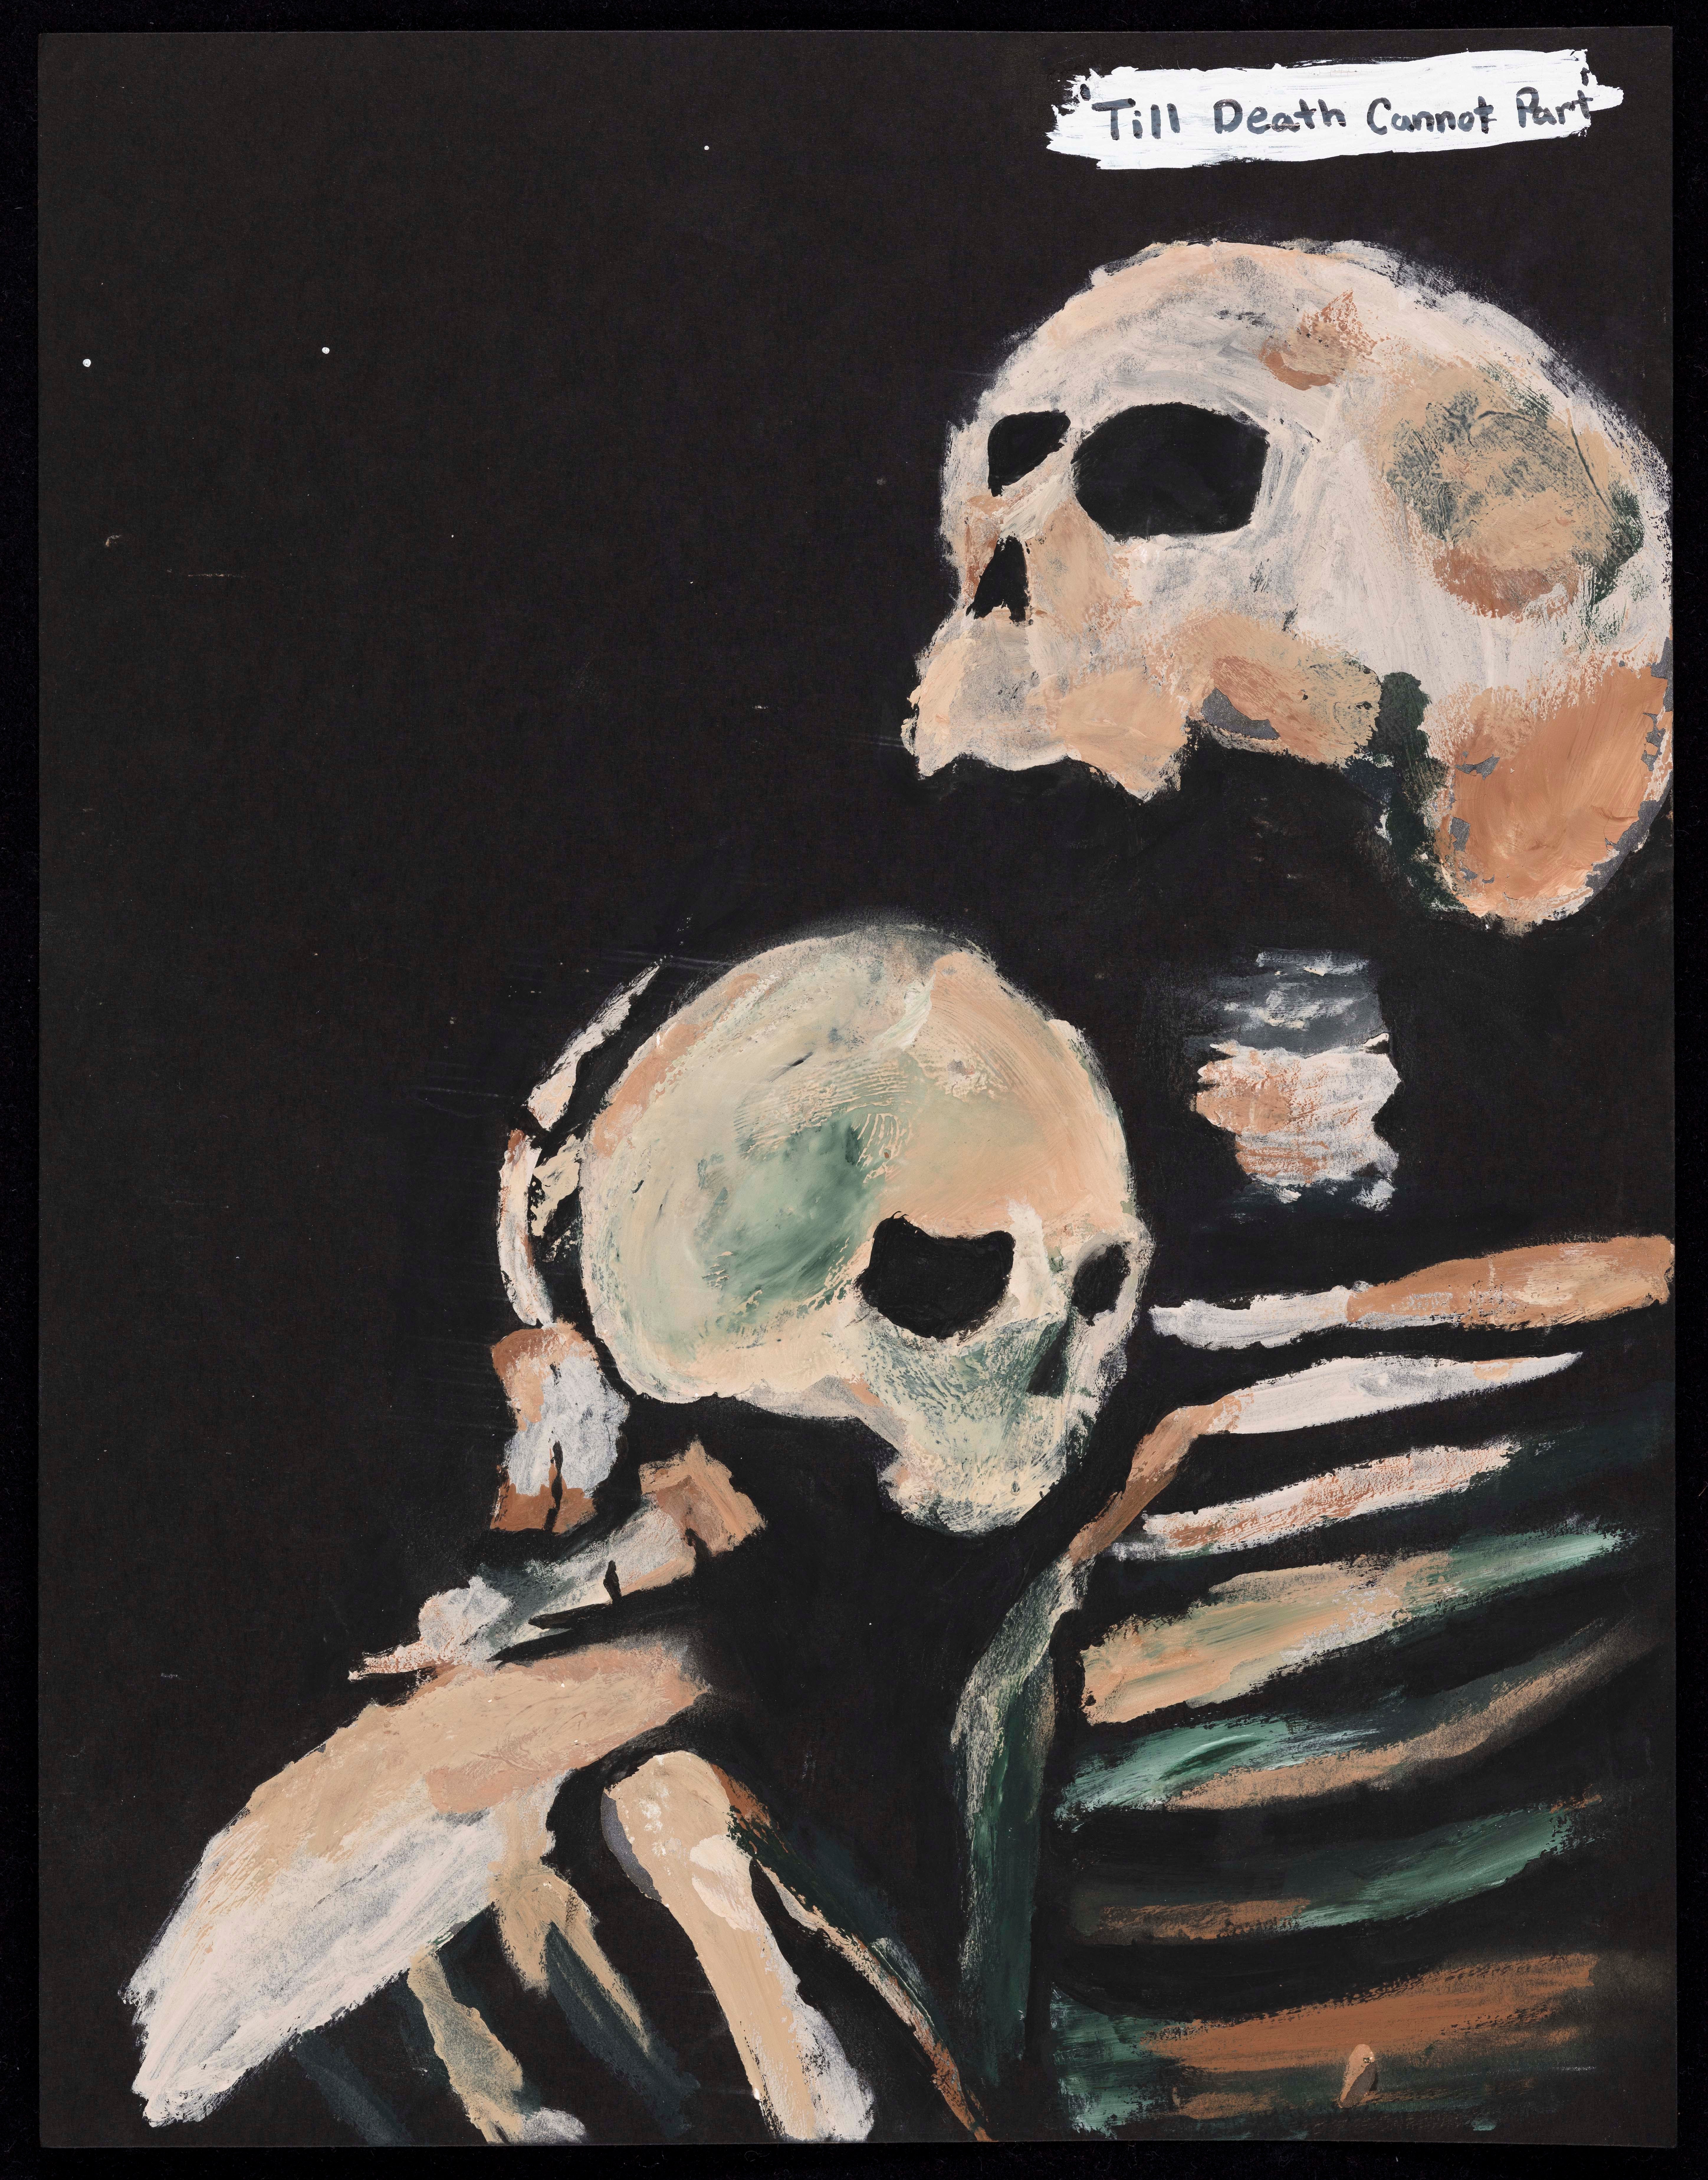 Reya Shmed, "Till death cannot part," painting, Grade 11, Teacher: Khayman Jones.